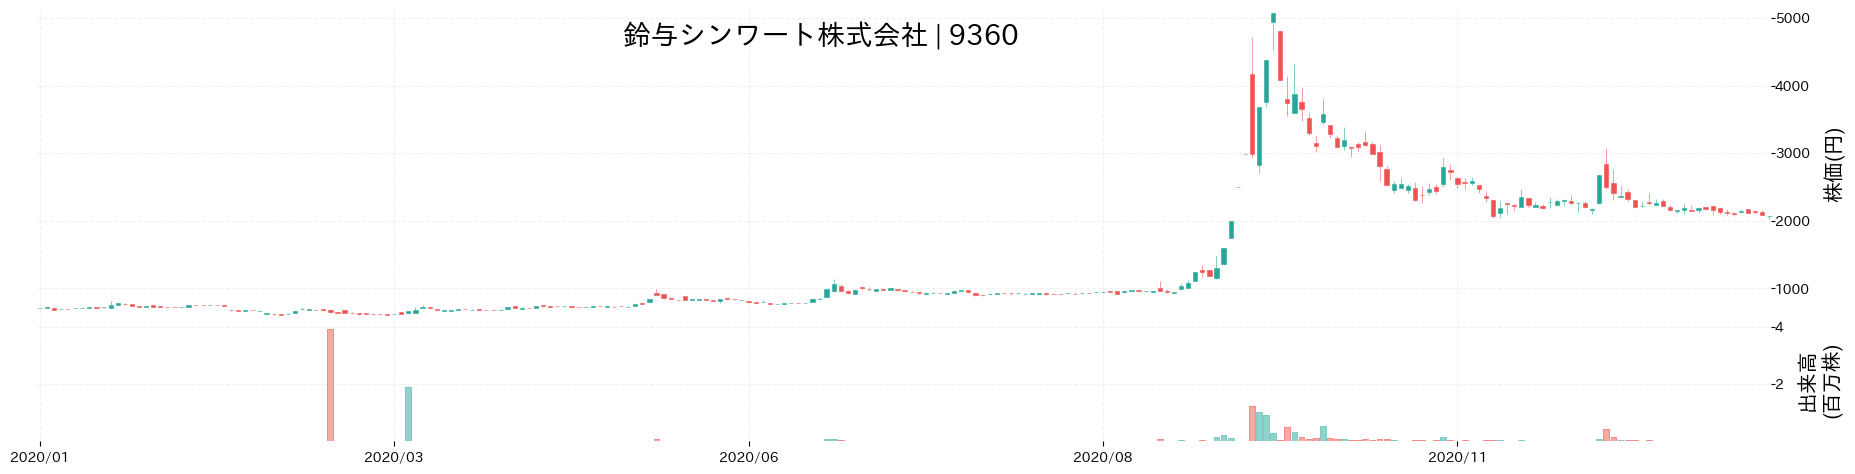 鈴与シンワートの株価推移(2020)